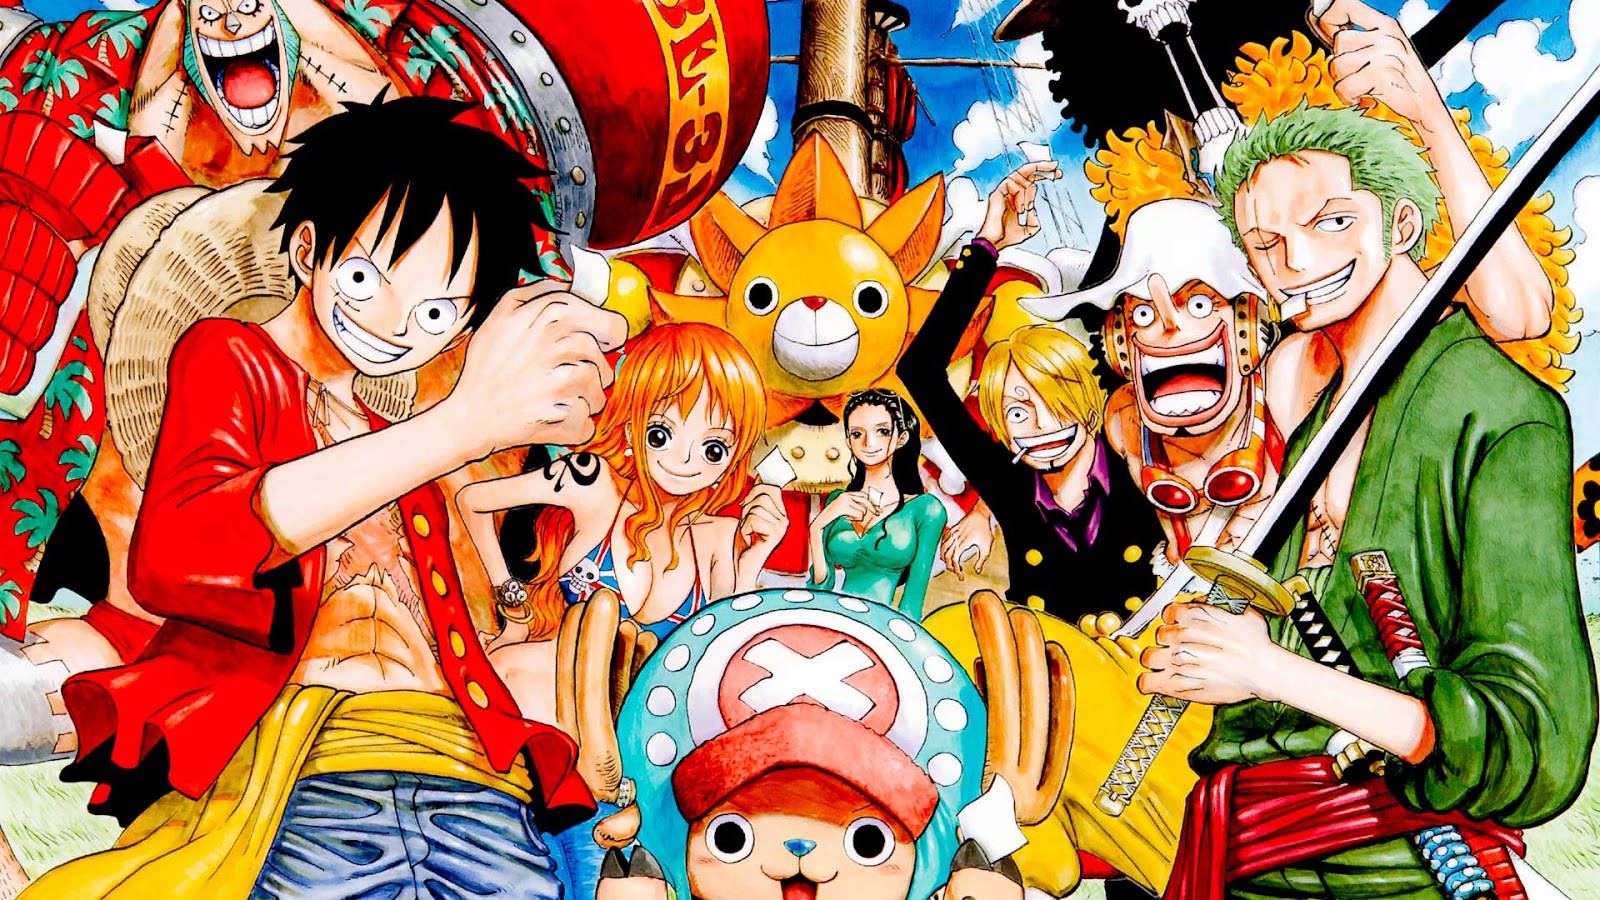 One Piece Episode 960